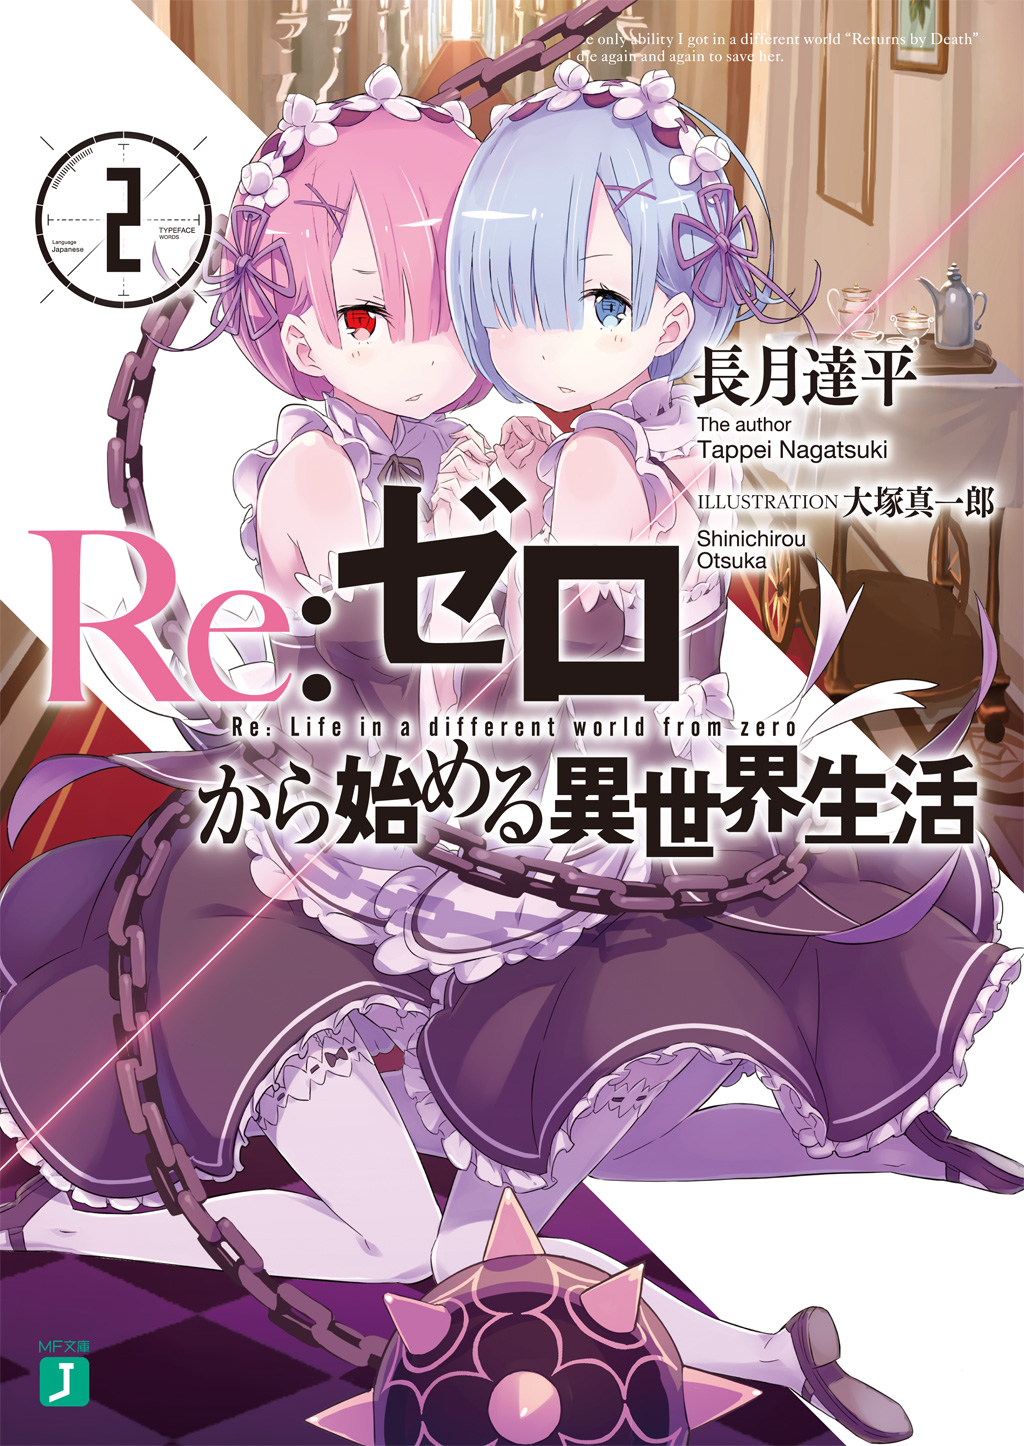 Re:Zero Ex Light Novel Volume 3, Re:Zero Wiki